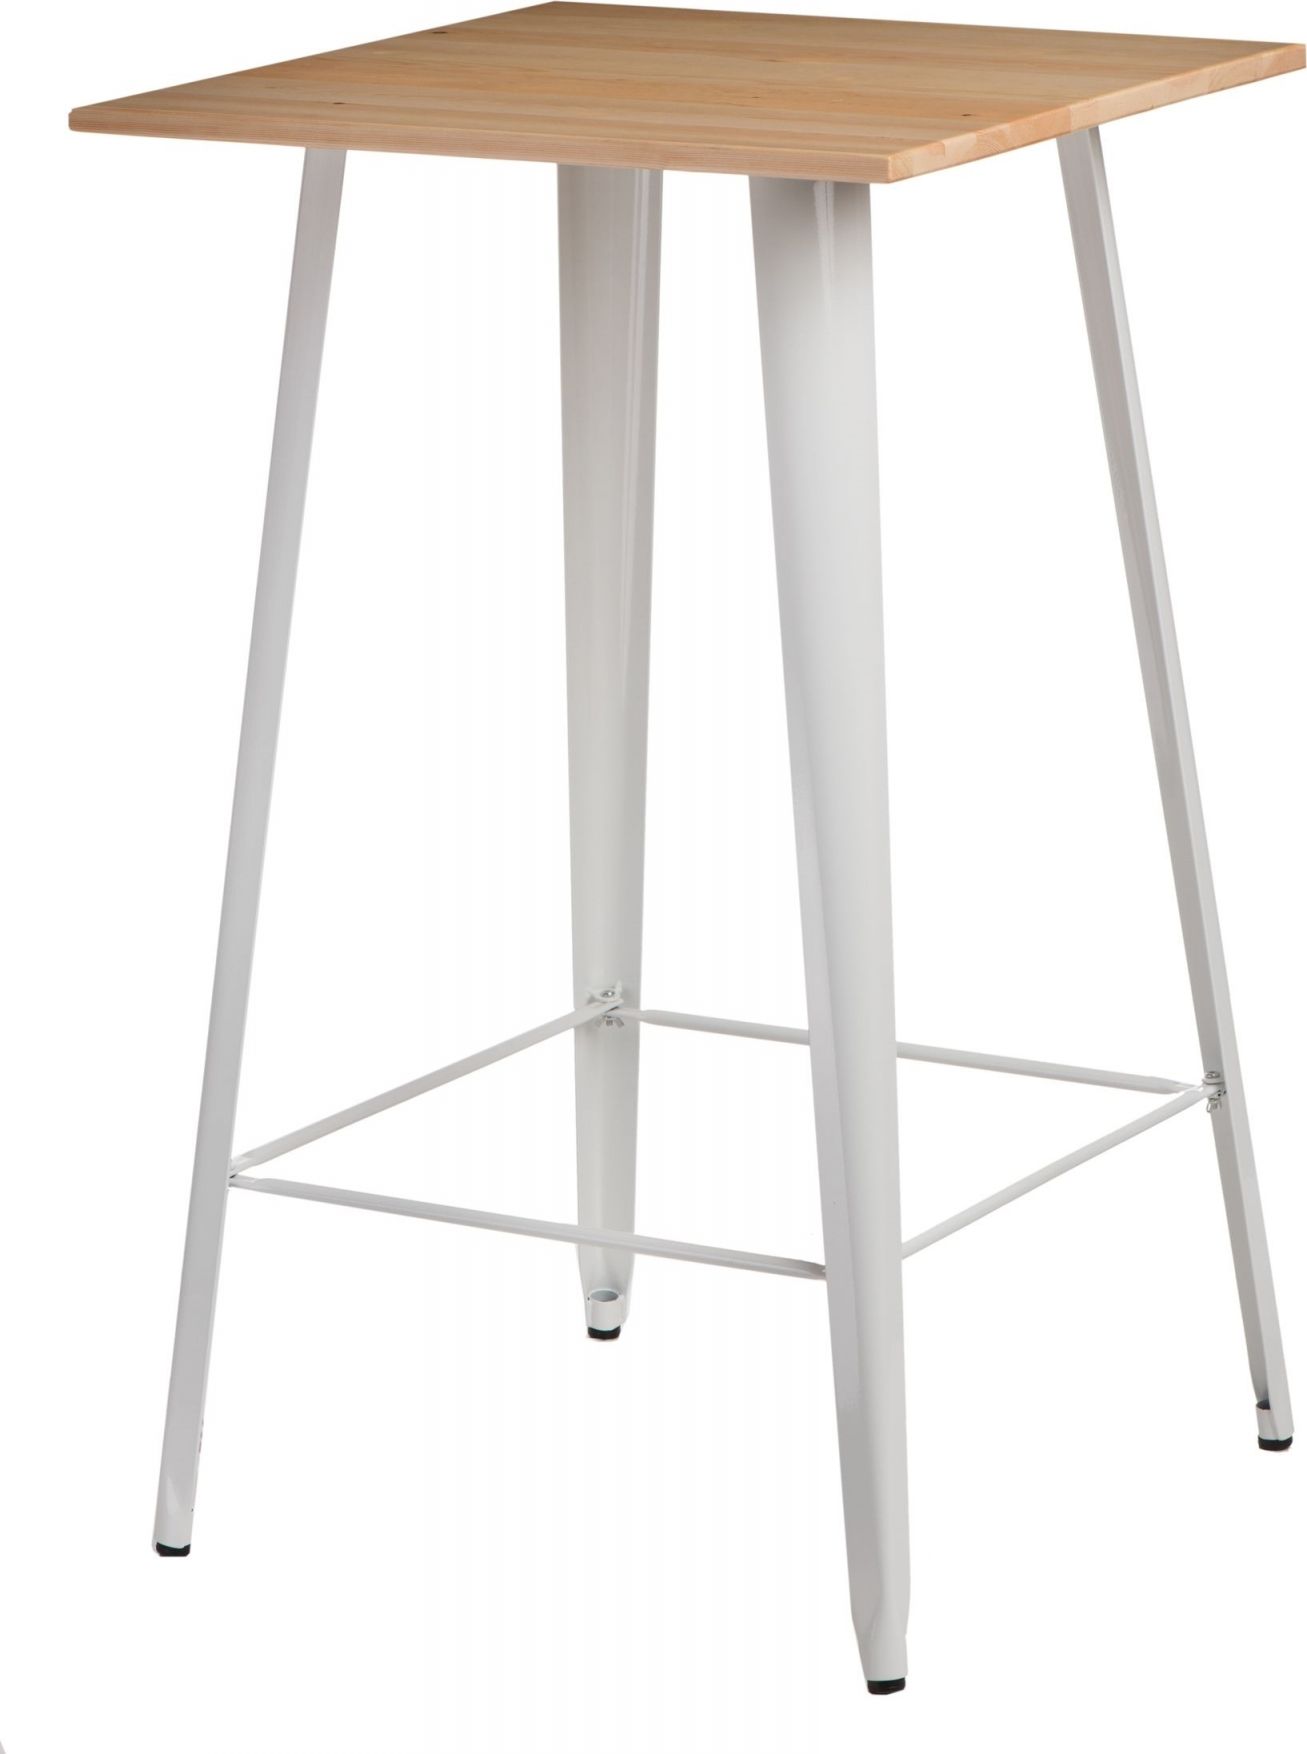 Mørtens Furniture Čtvercový stůl barový, 60x60cm, světlé dřevo, kovový ručně vyráběný, moderní design Barva: Bílá - M DUM.cz